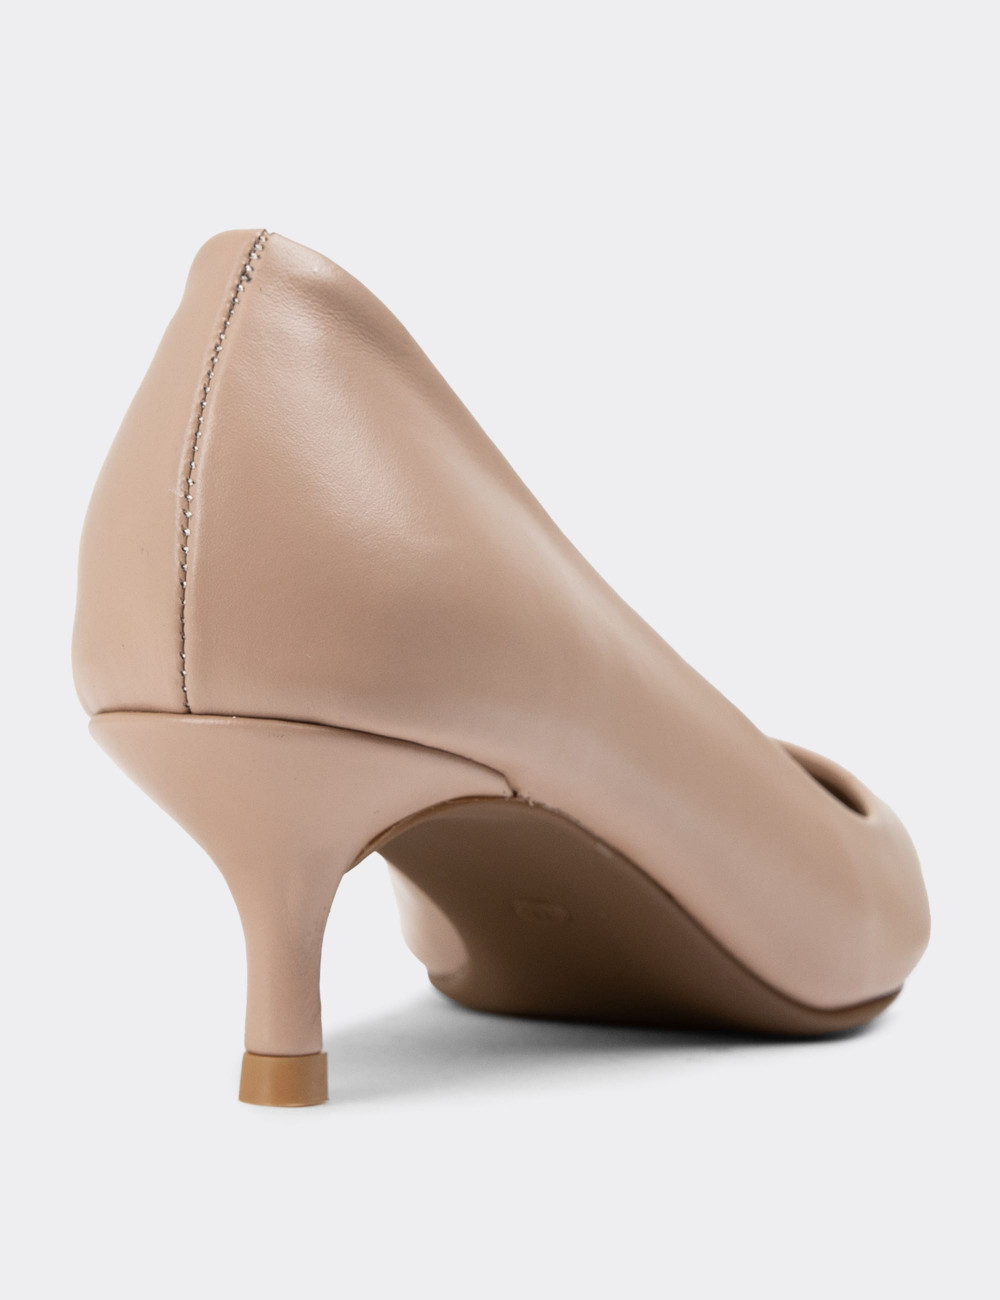 Bej Stiletto Kadın Topuklu Ayakkabı - R8505ZBEJC01